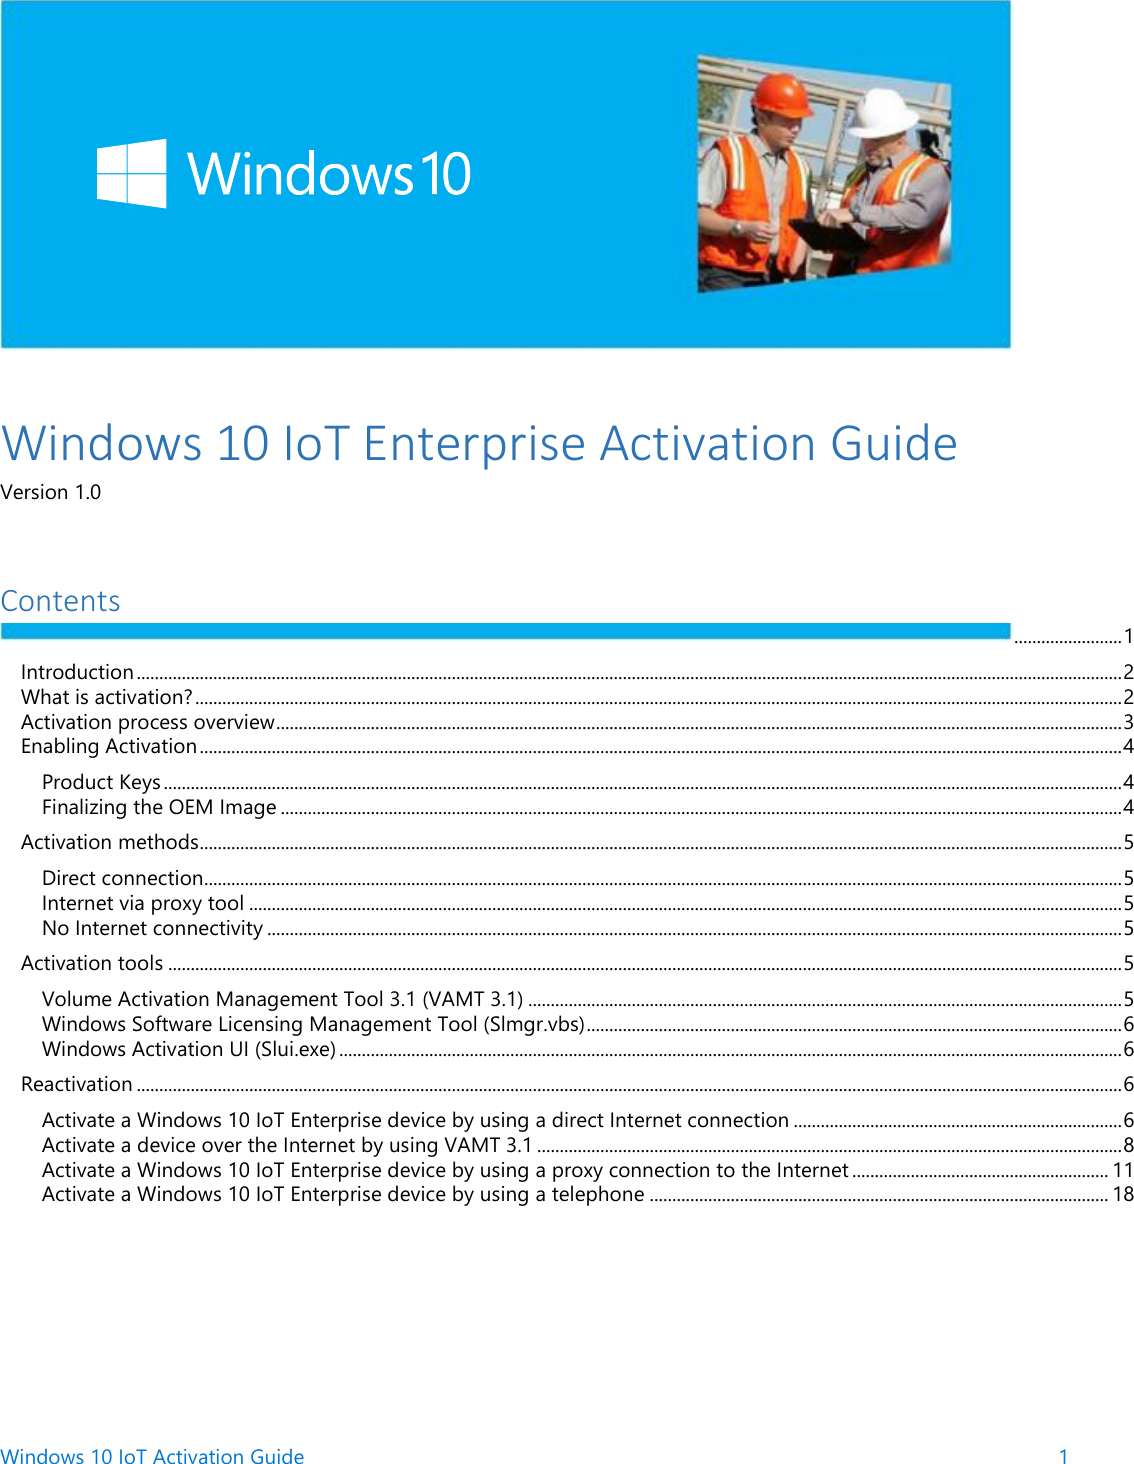 Windows 10 Io T Enterprise Activation Guide